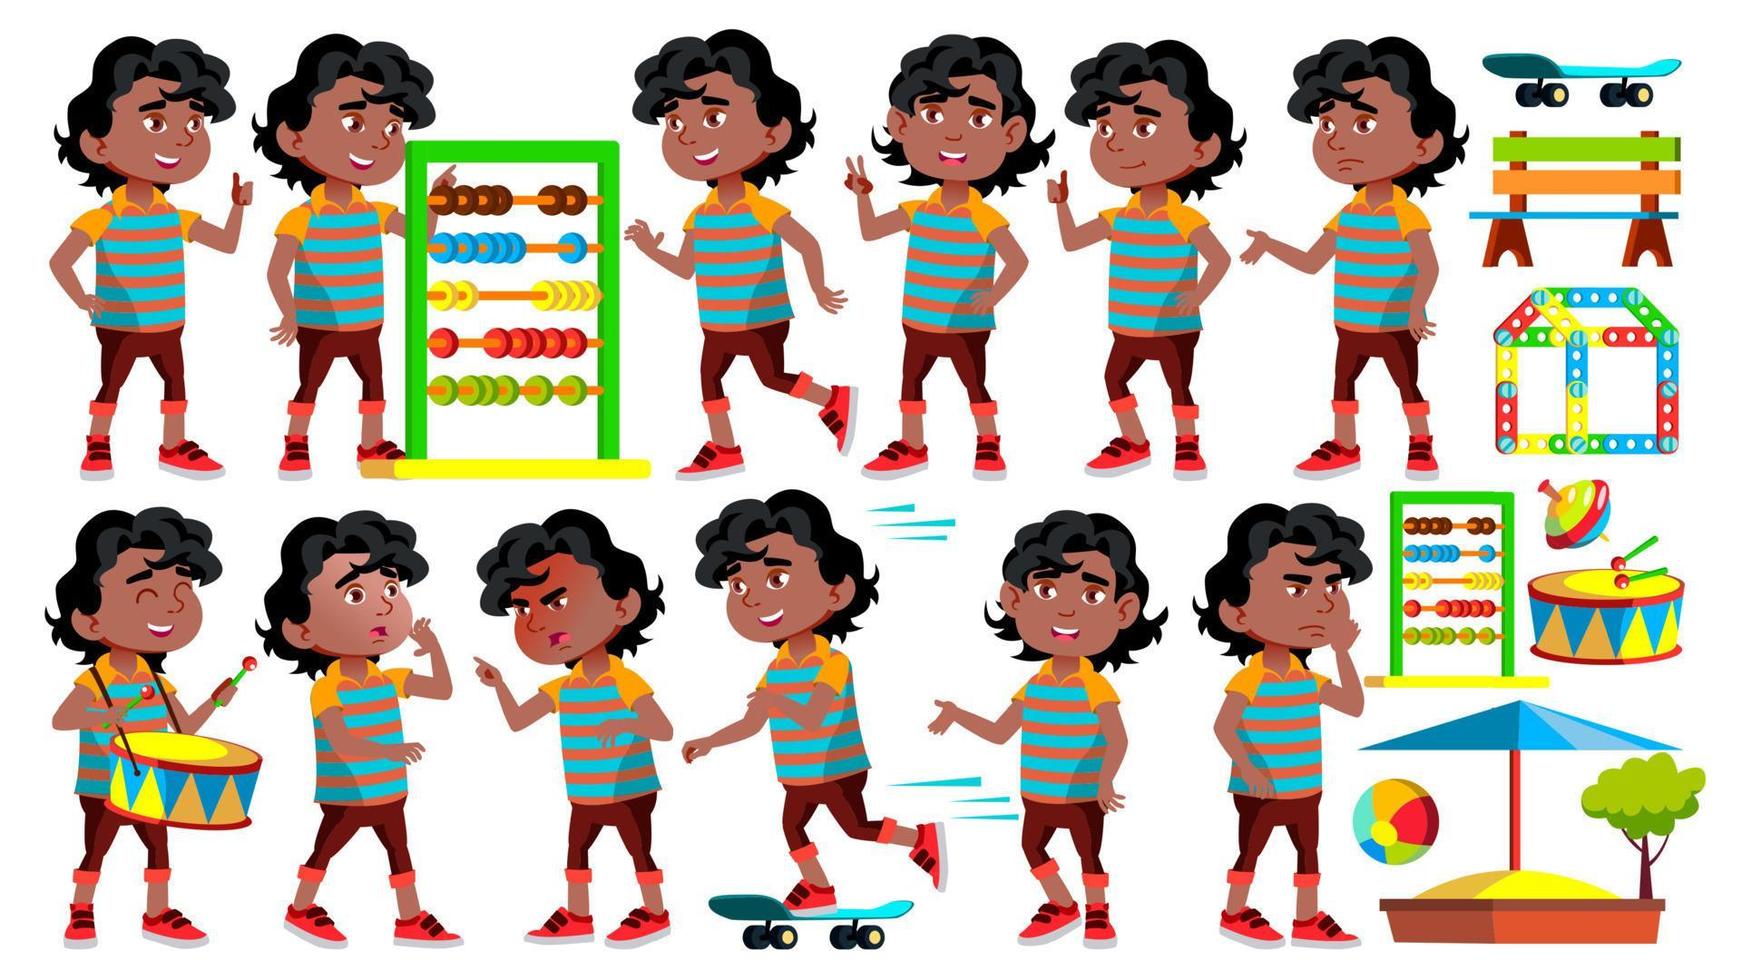 noir, afro-américain garçon maternelle kid pose set vector. personnage d'enfants heureux. Baby-sitting. pour la publicité, les salutations, la conception d'annonces. illustration de dessin animé isolé vecteur